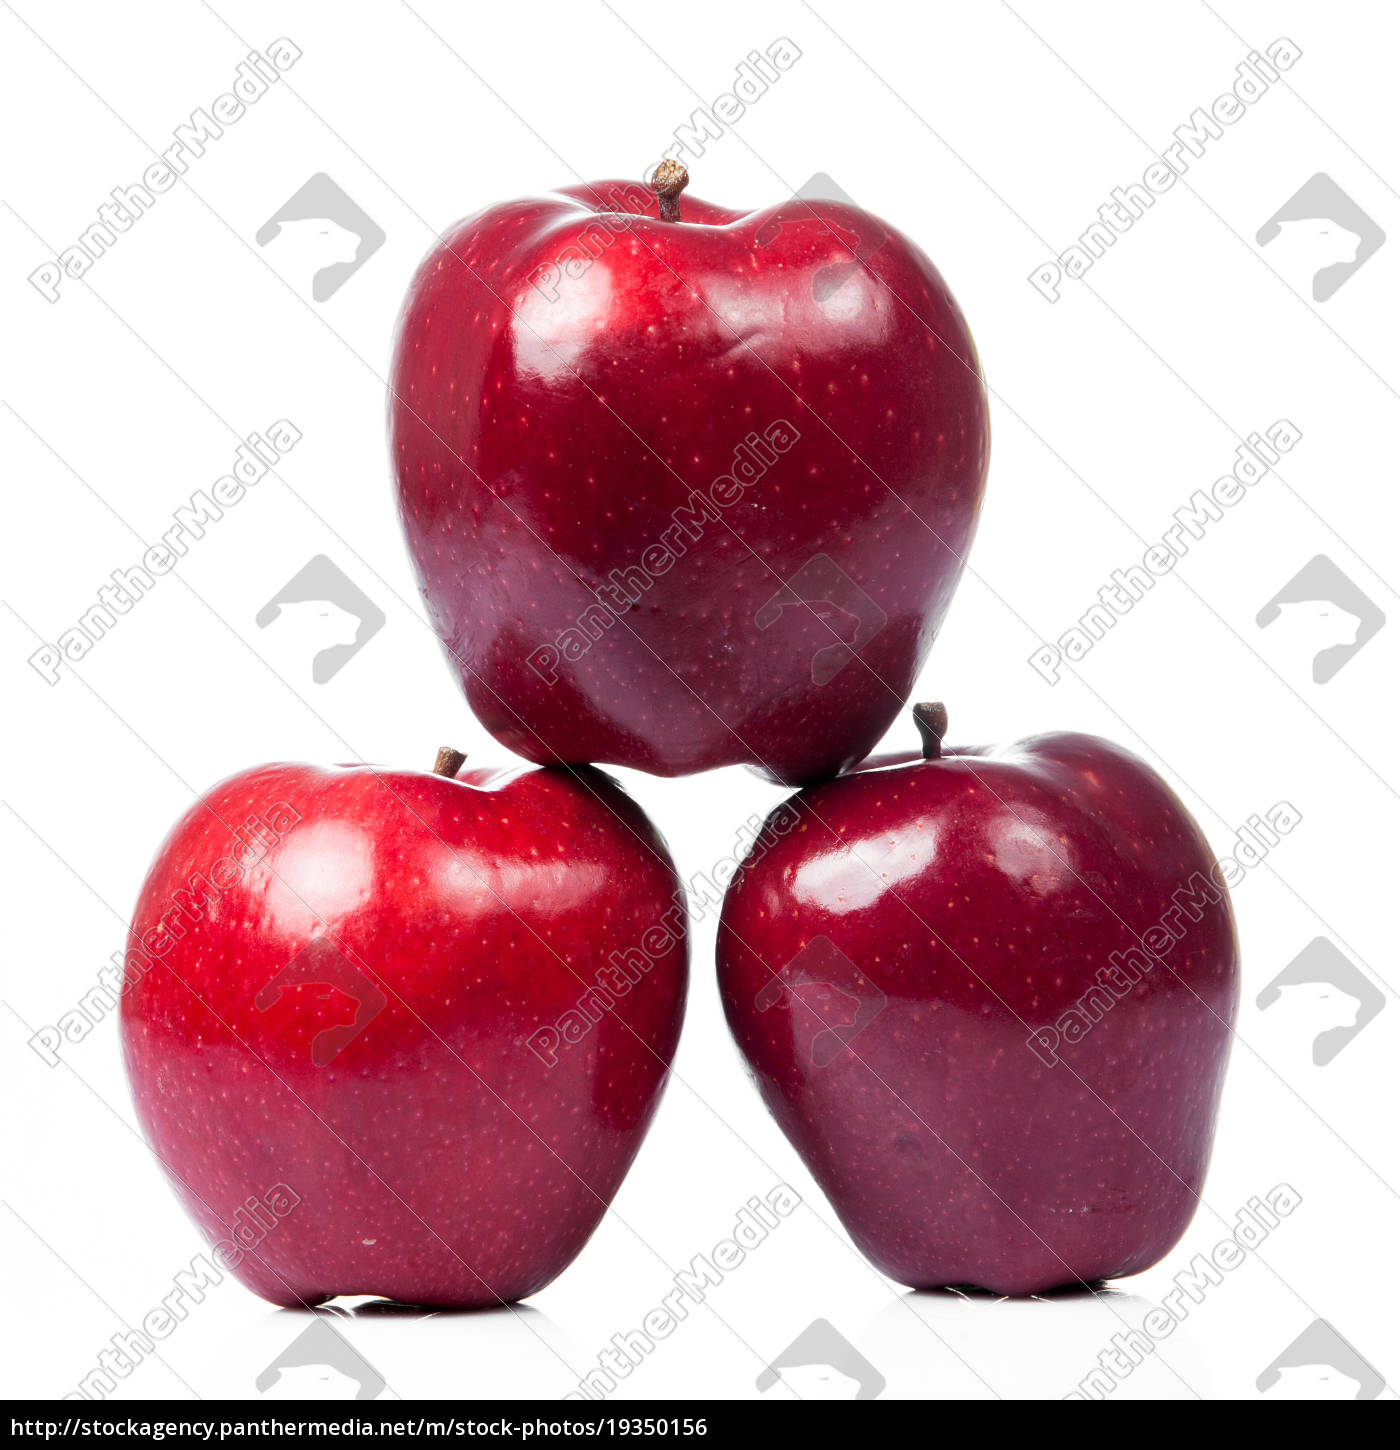 frische rote äpfel Lizenzfreies Bild - Bildagentur weiß. | isoliert #19350156 auf roter apfel PantherMedia